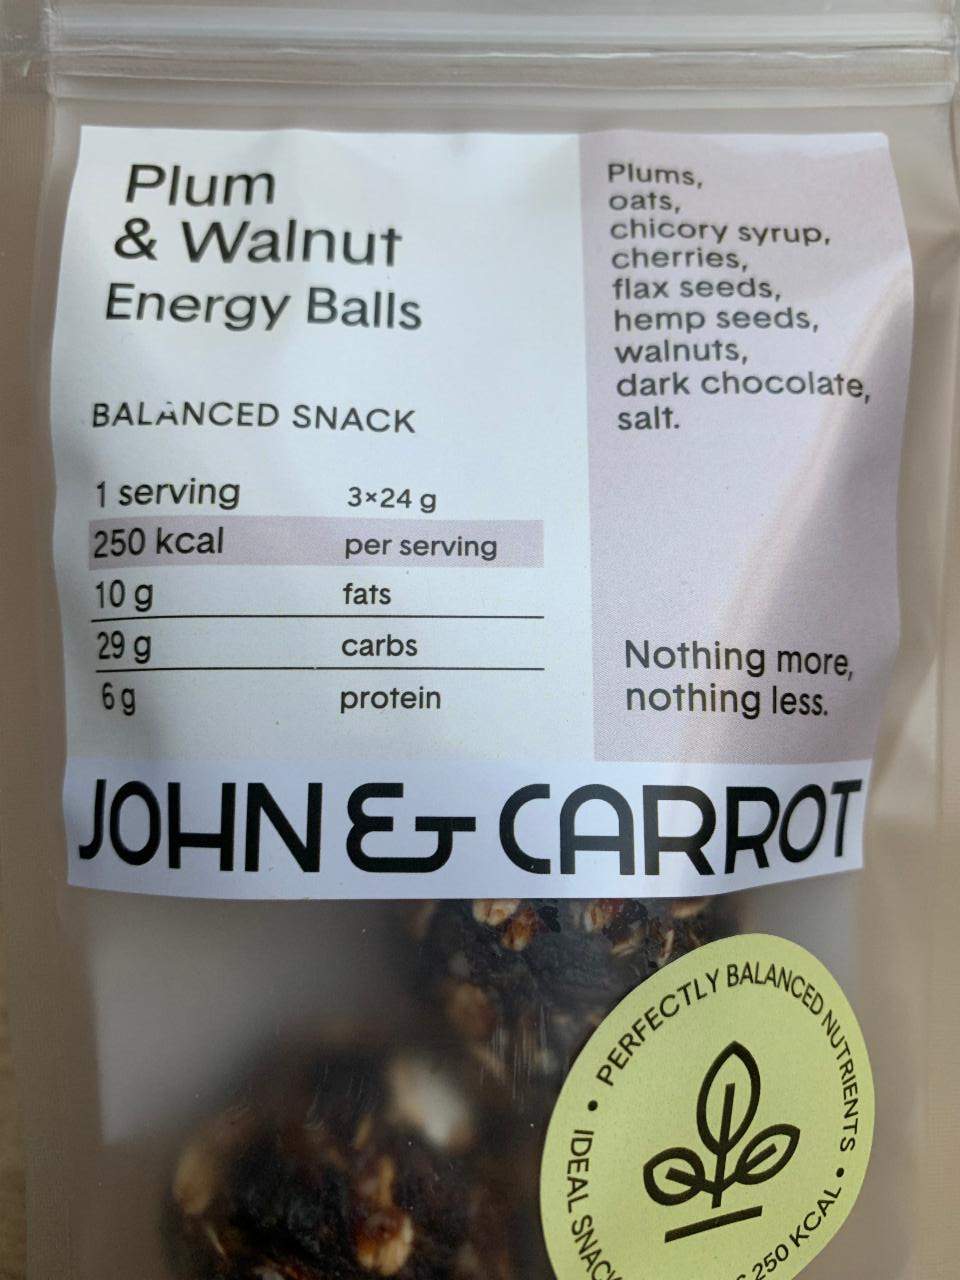 Fotografie - Plum & Walnut Energy Balls John & Carrot